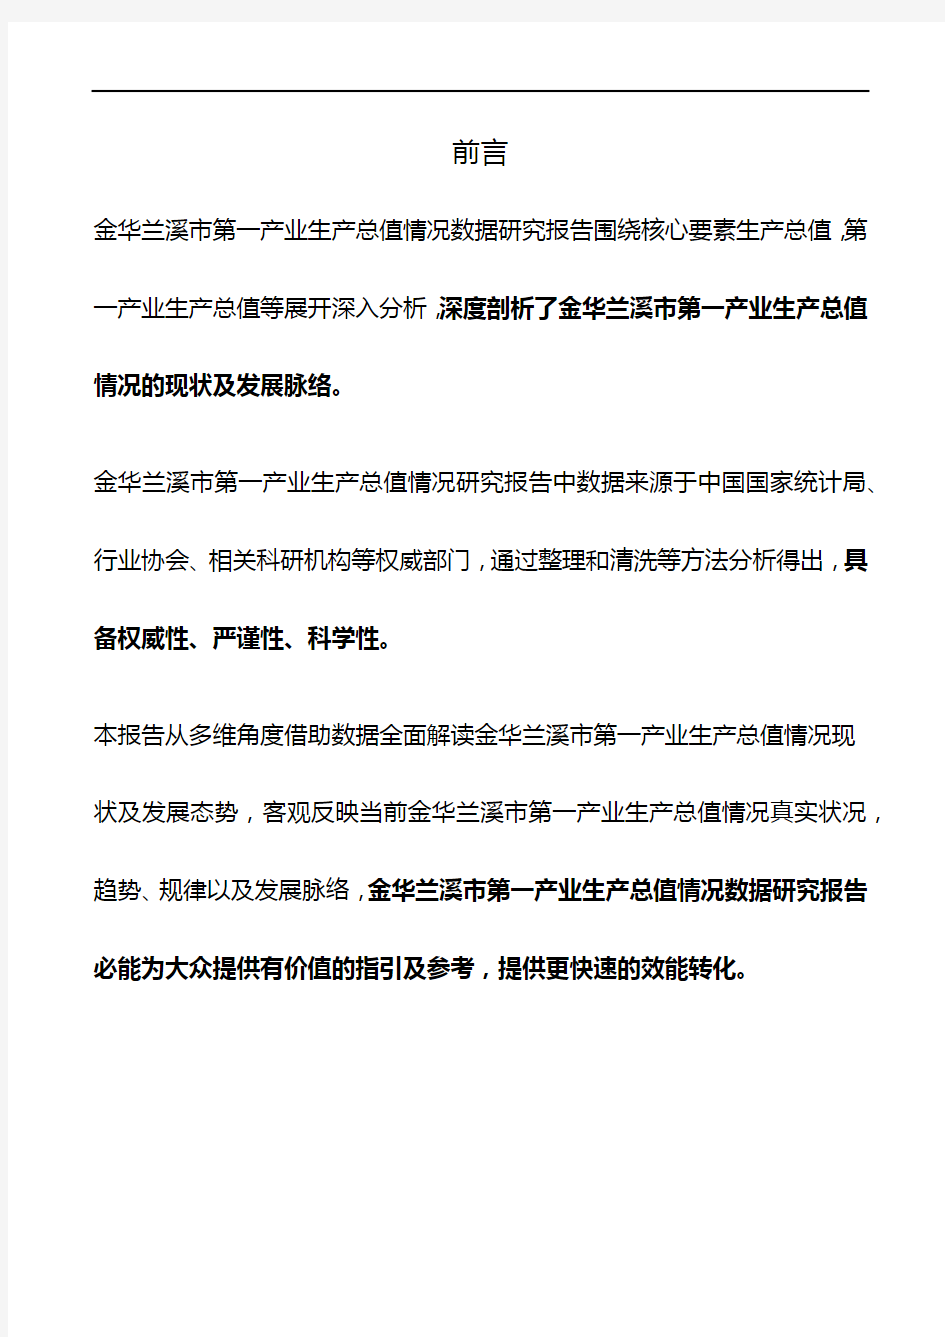 浙江省金华兰溪市第一产业生产总值情况数据研究报告2019版